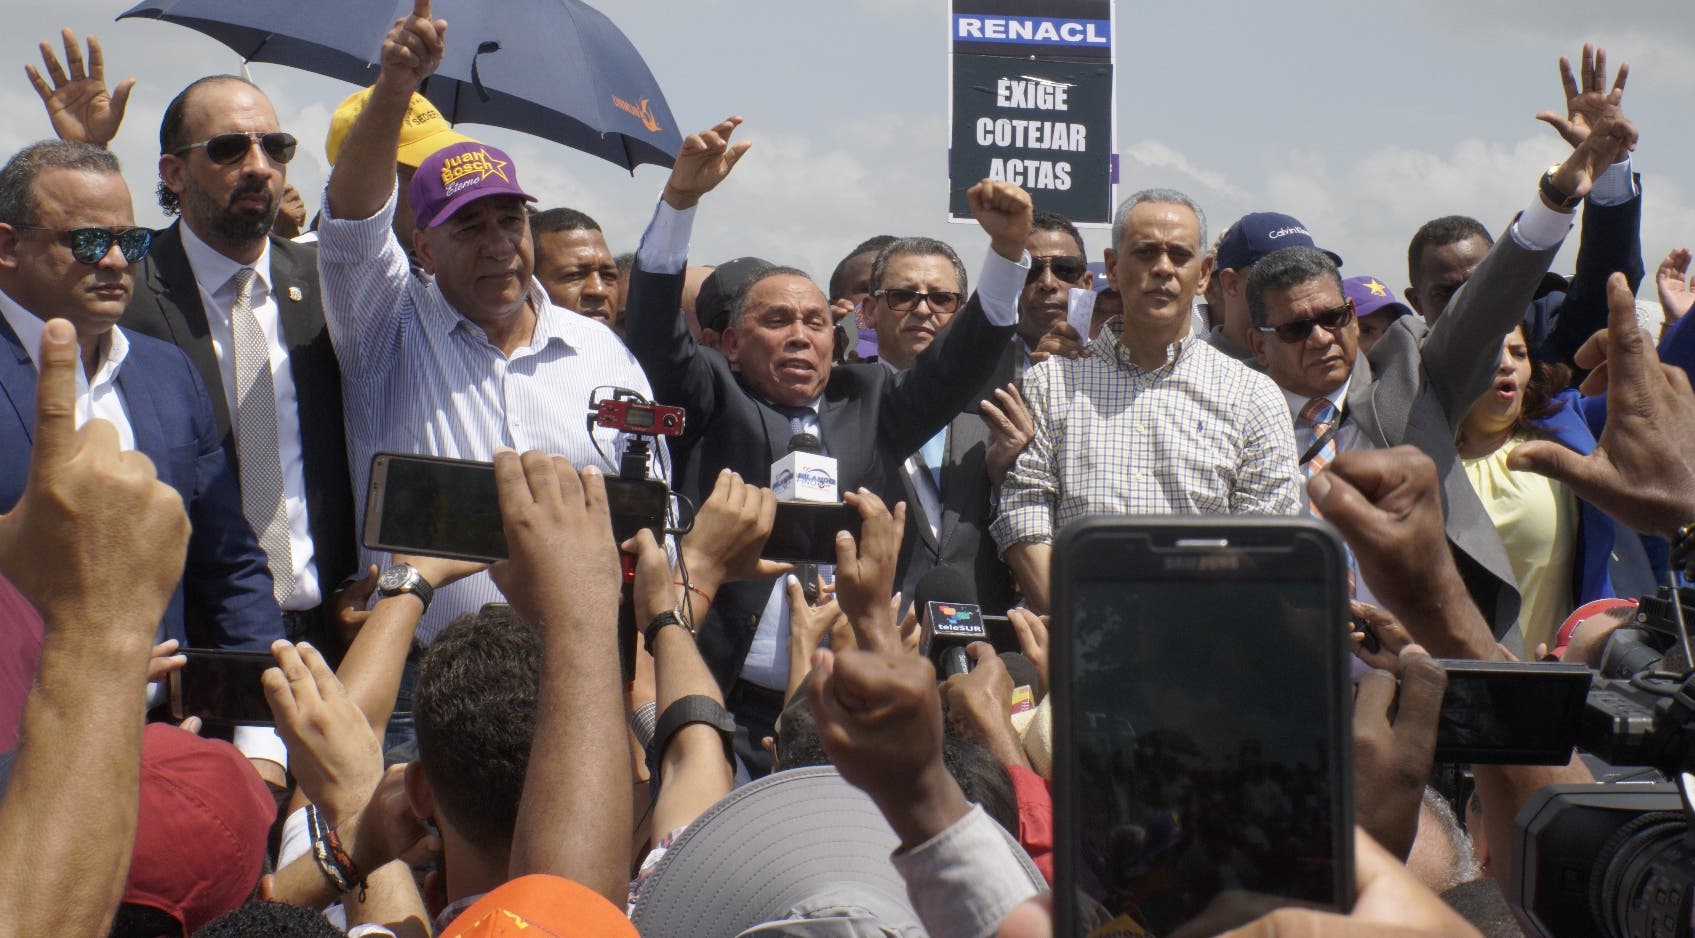 El equipo político del expresidente Fernández ha anunciado nuevas protestas este lunes frente a la sede de la JCE.   Archivo